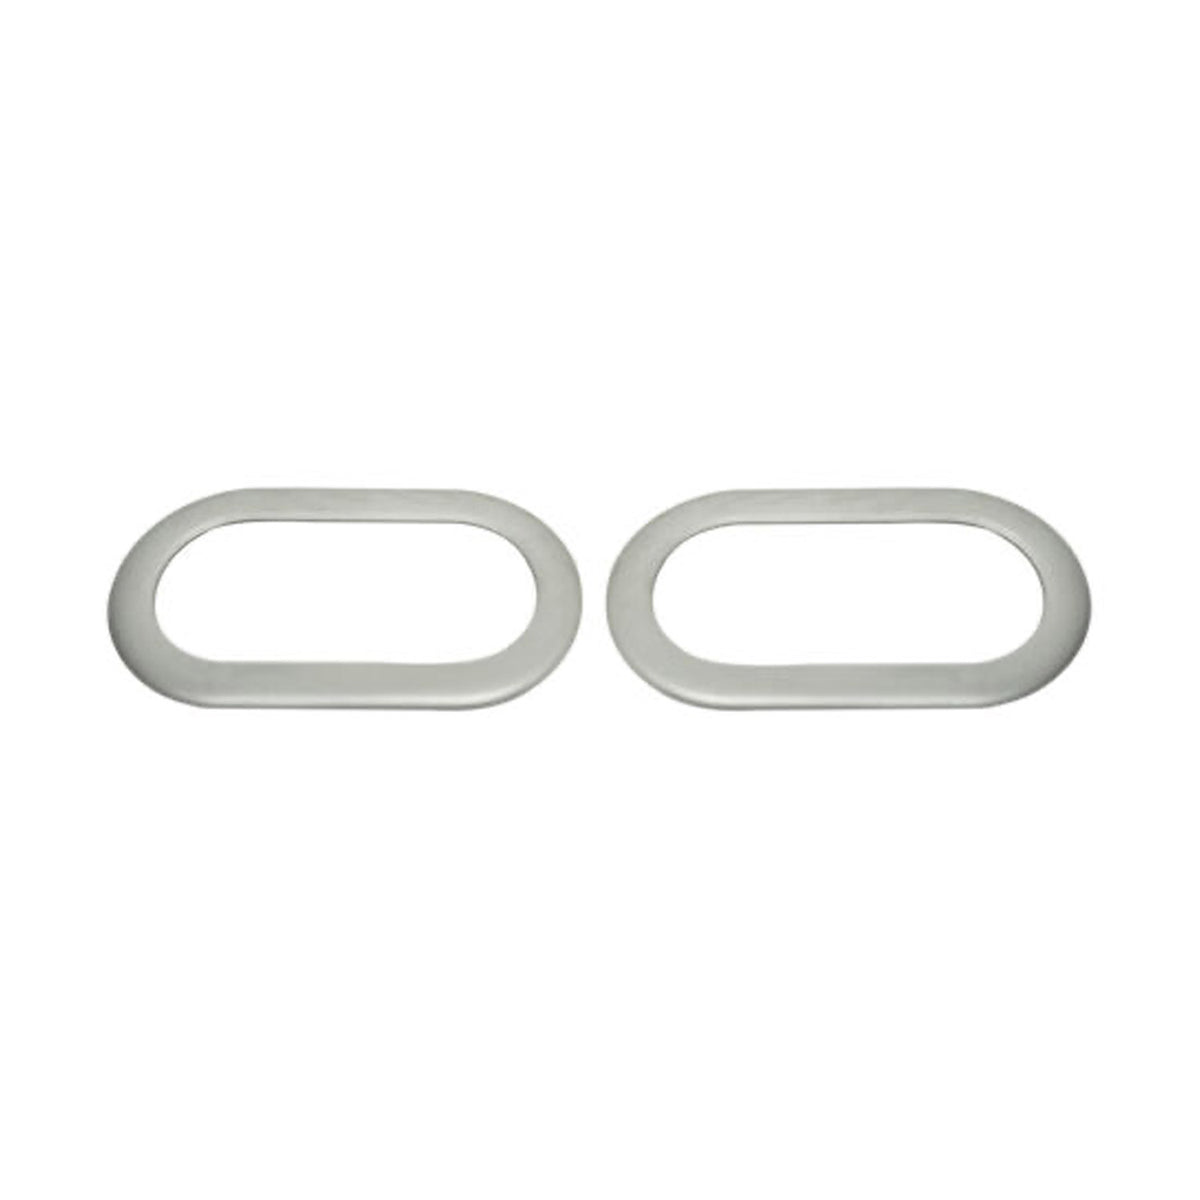 Blinkerrahmen Seitenblinker für Ford Focus Fiesta C-Max Galaxy Edelstahl Silber